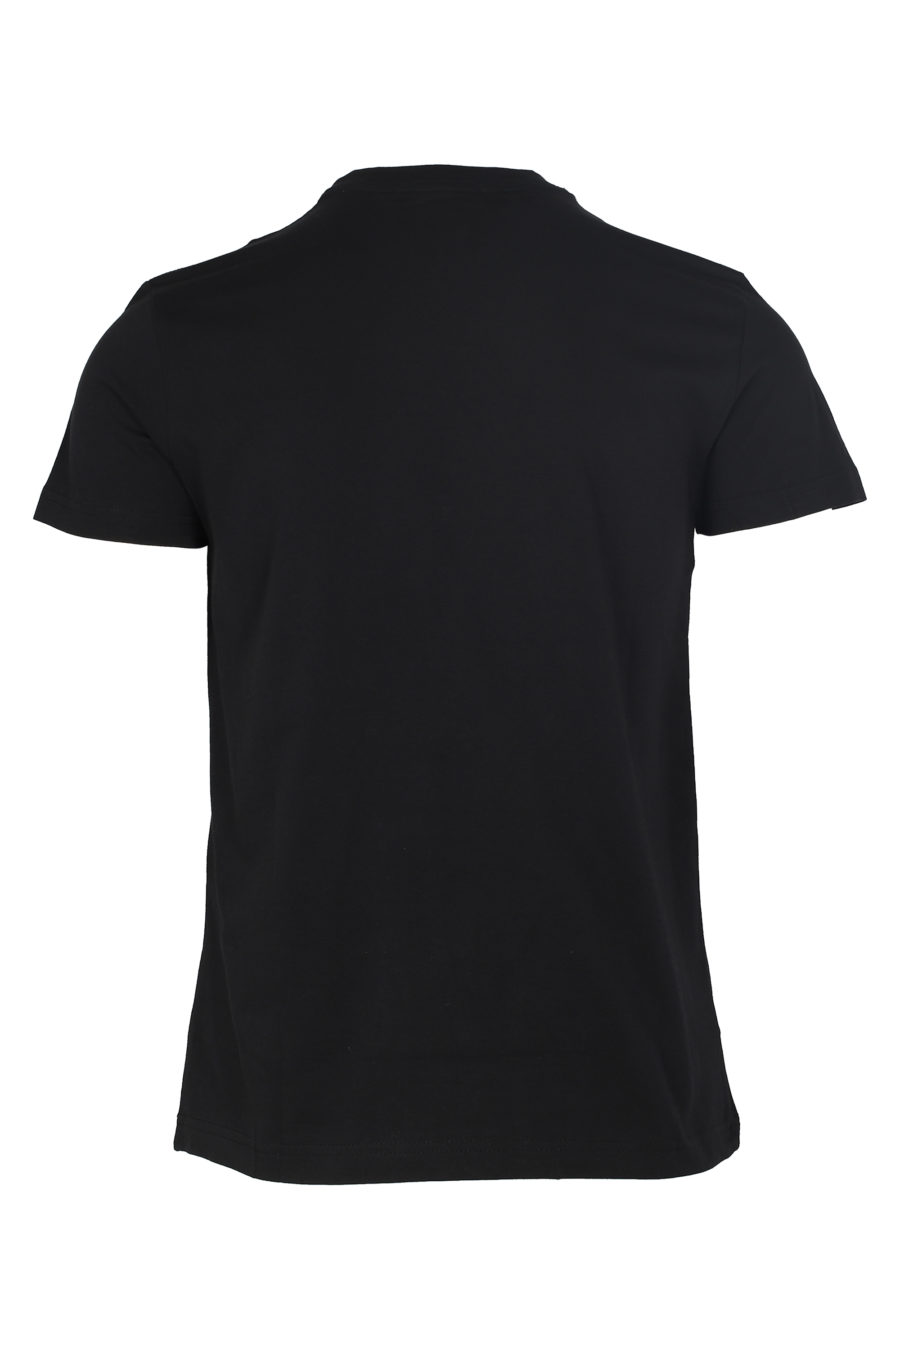 Schwarzes T-Shirt mit silbernem runden Logo - IMG 6027